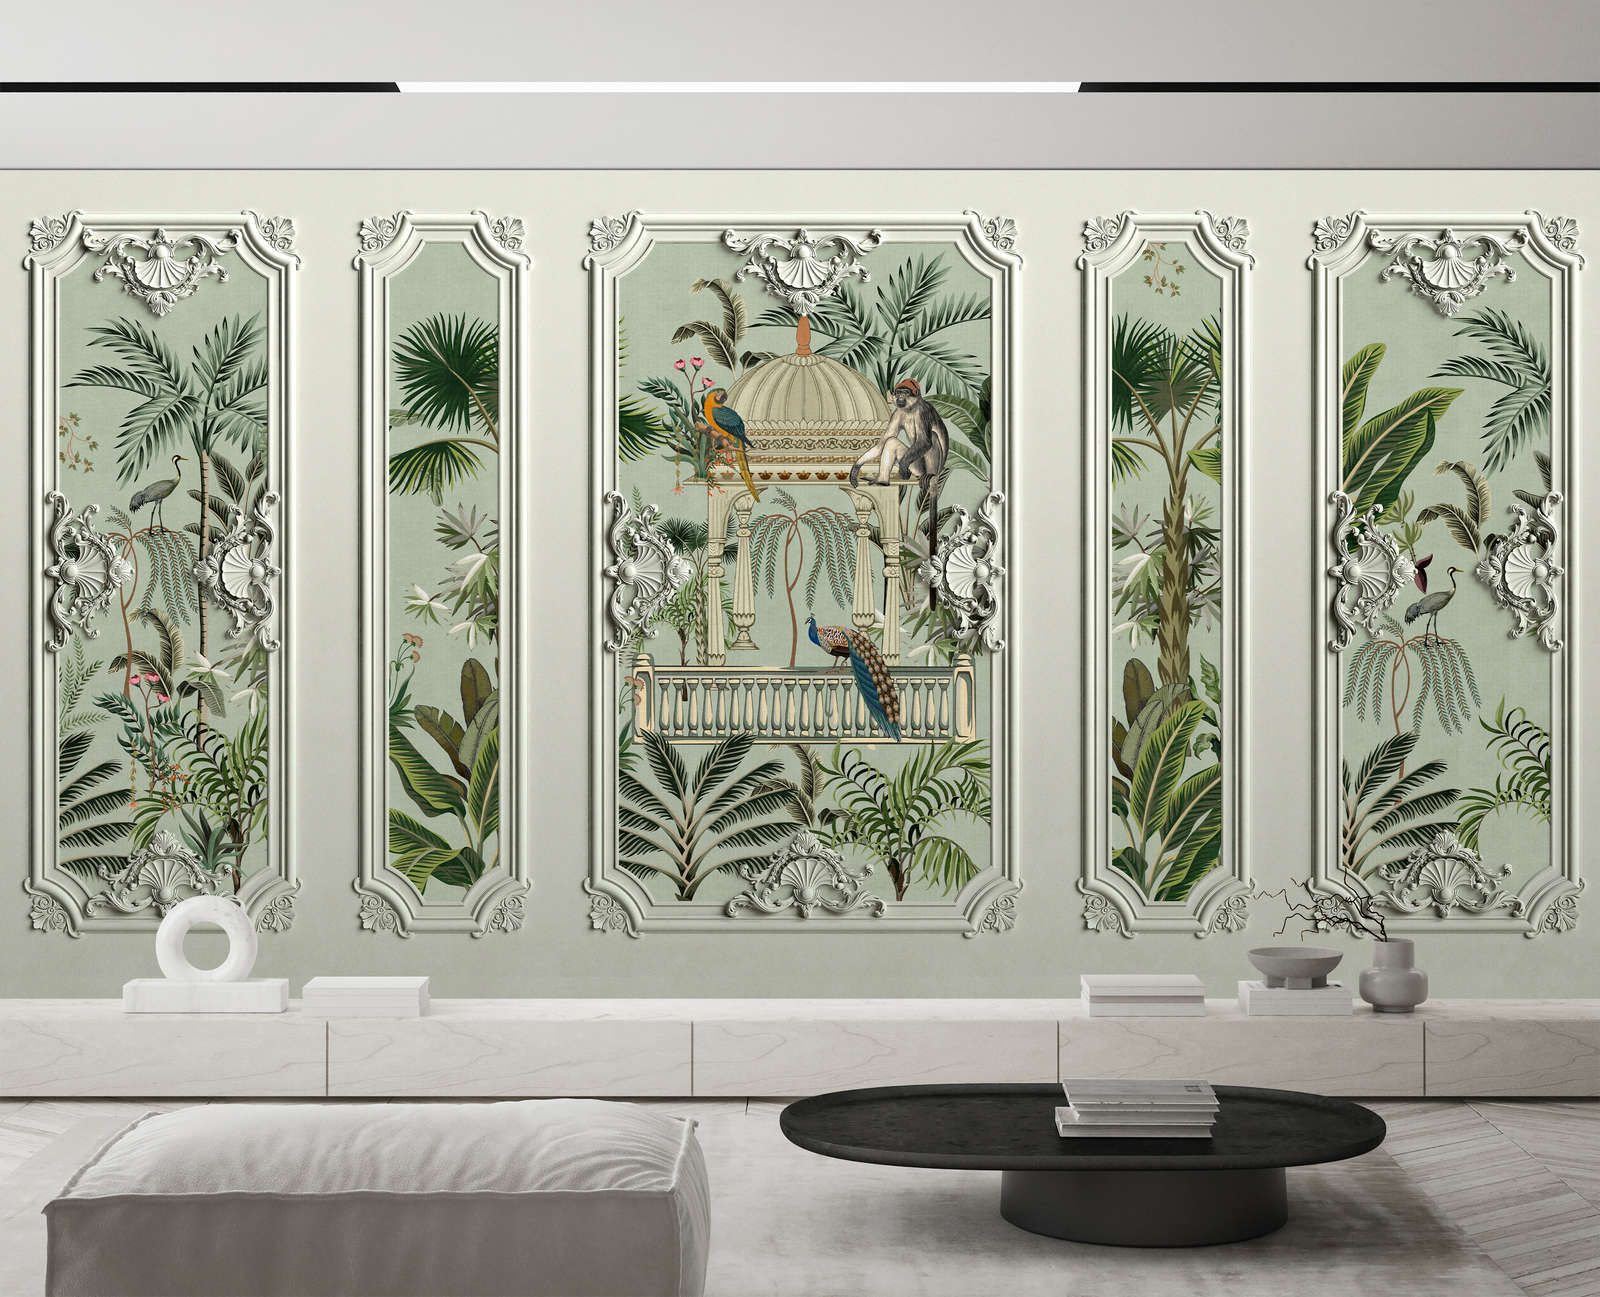             papier peint en papier panoramique »darjeeling« - optique cadre stucco avec oiseaux & palmiers avec structure en lin en arrière-plan - intissé légèrement structuré
        